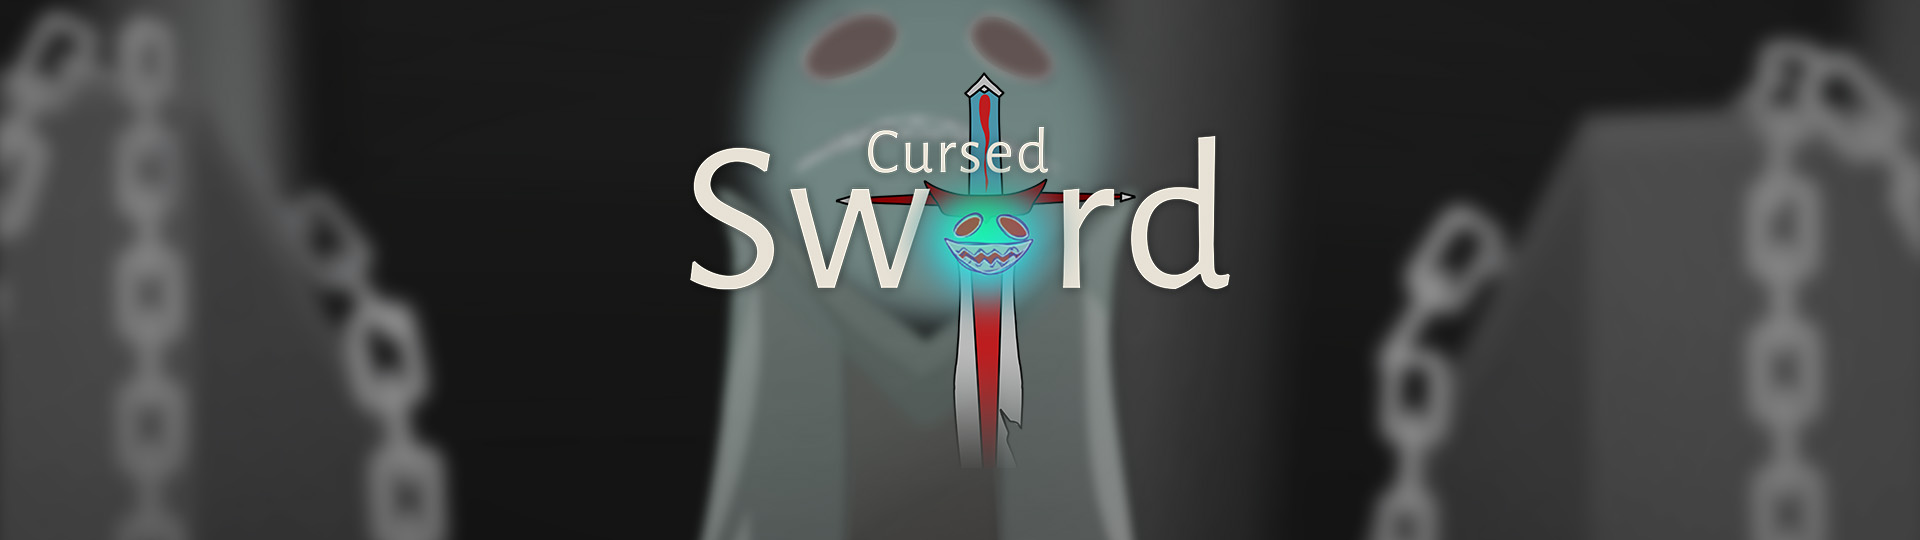 Cursed Sword